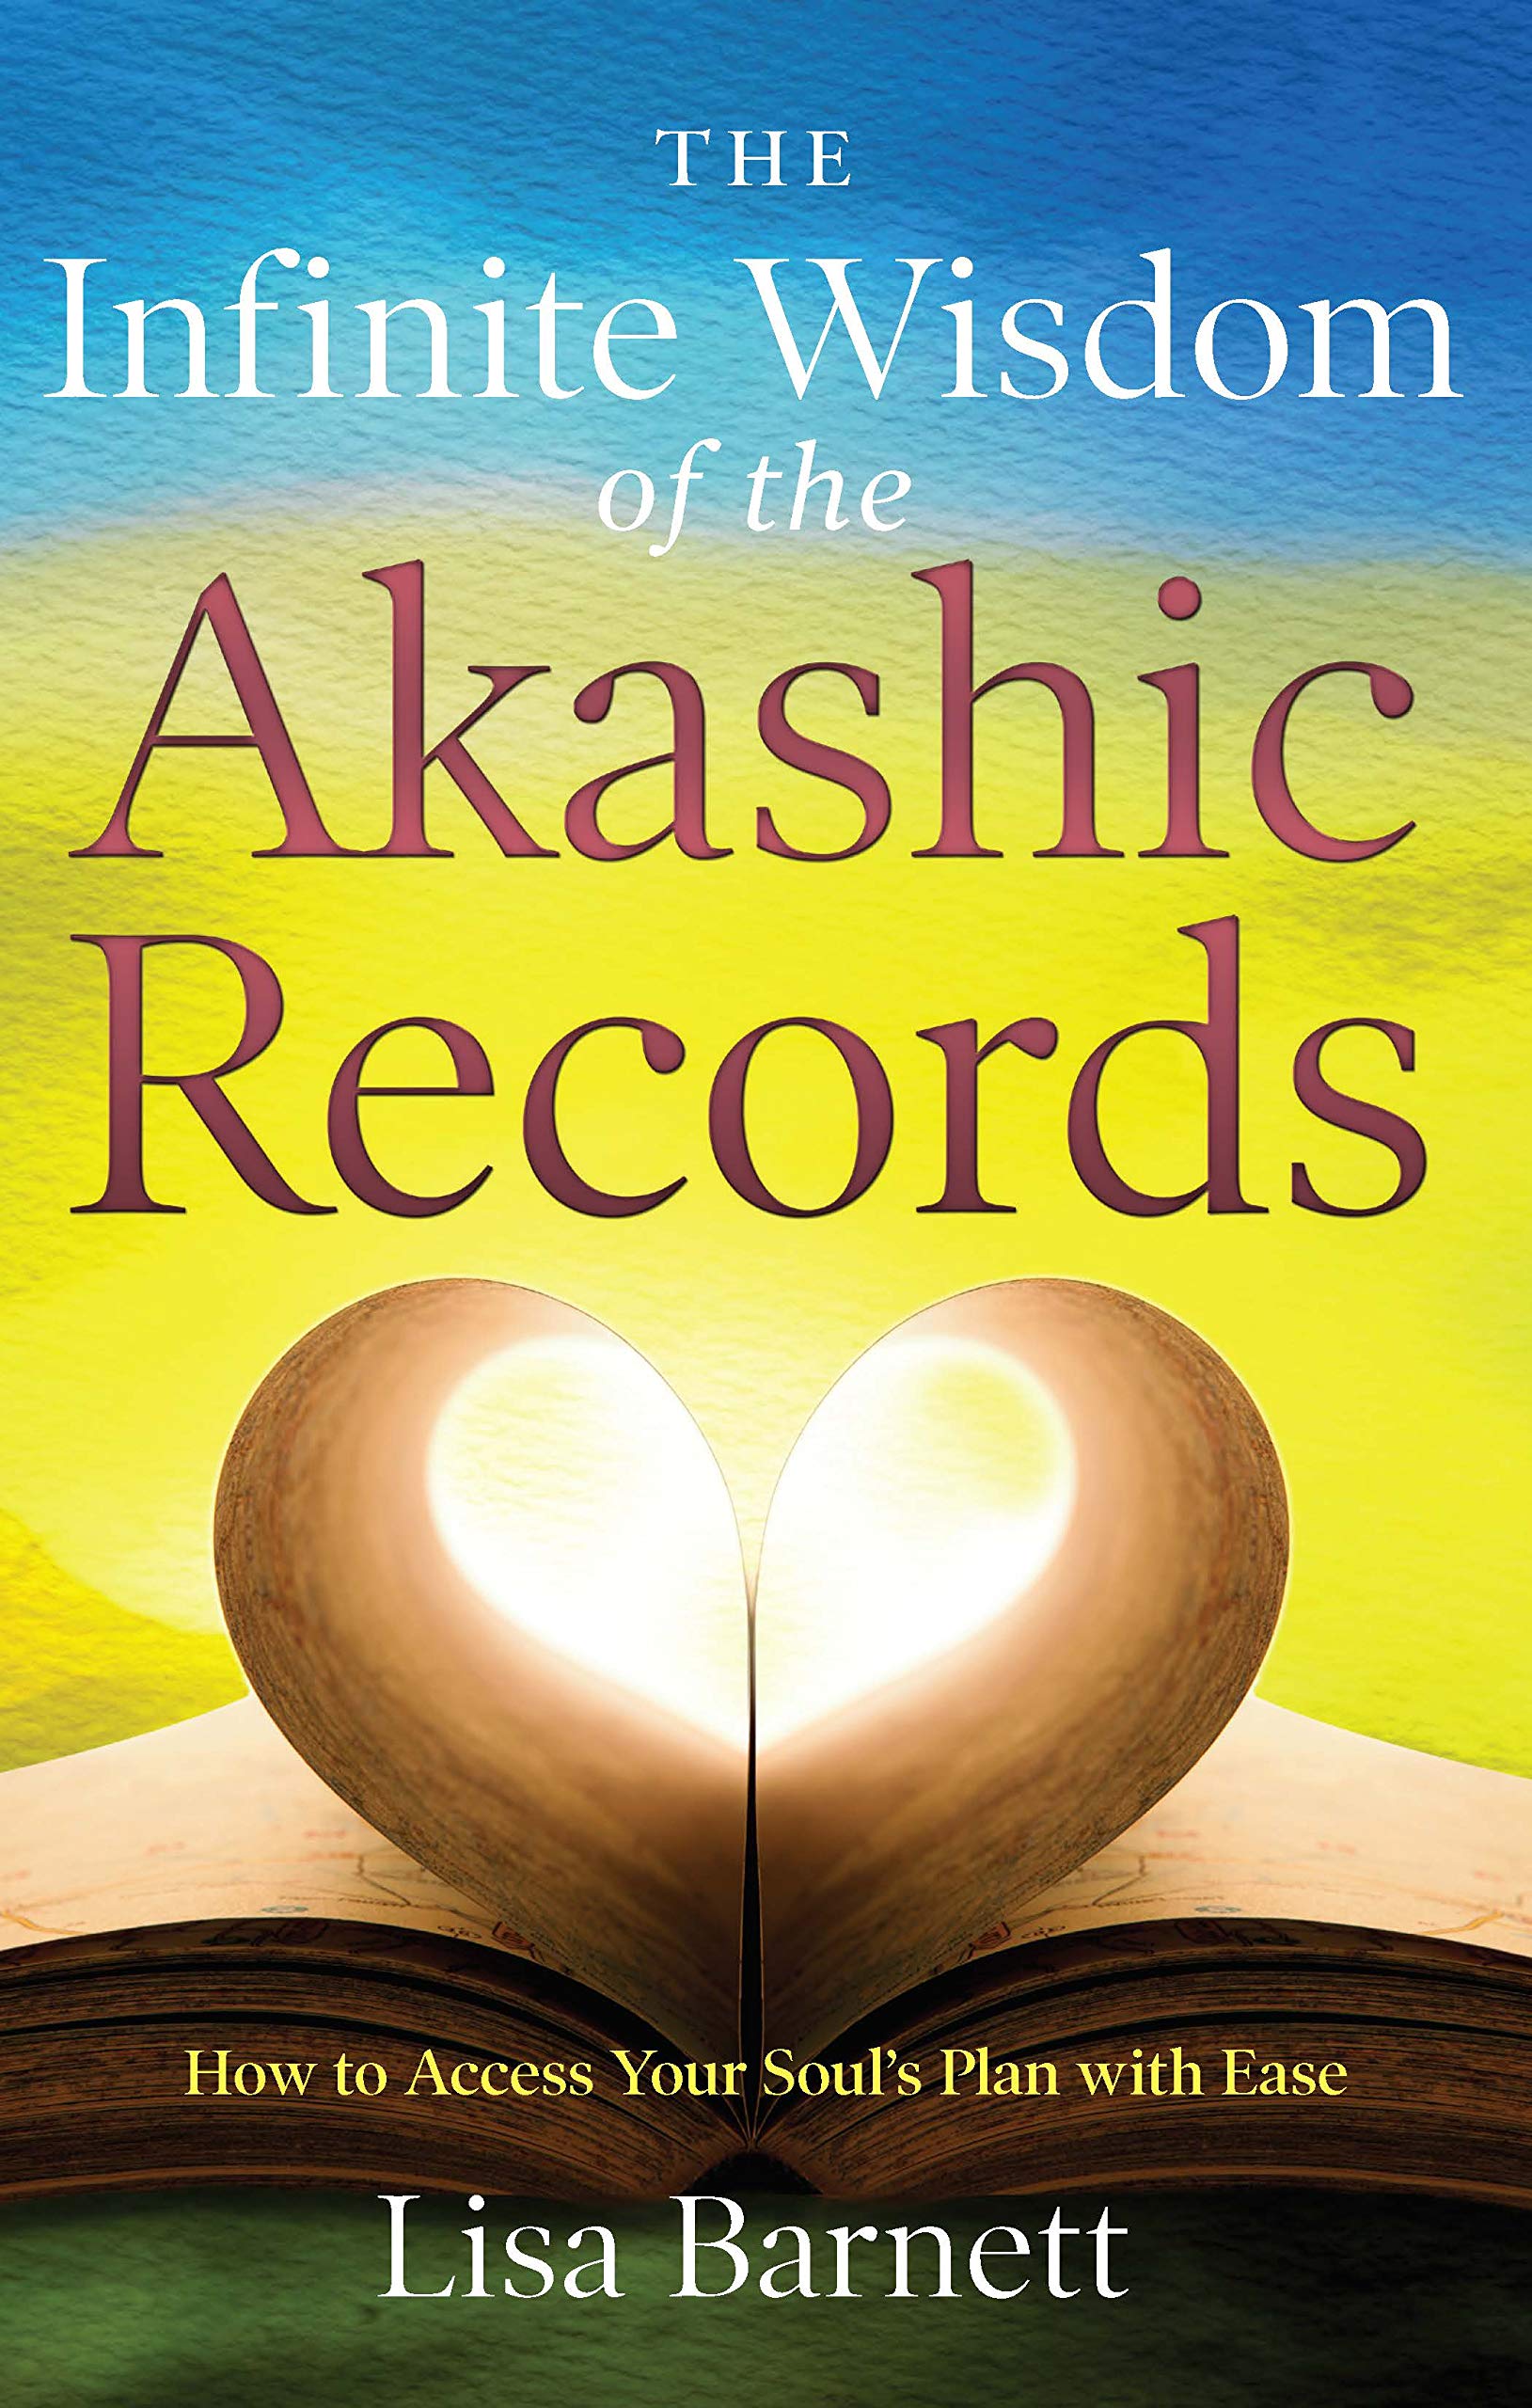 Lisa Barnett - Your Akashic Records